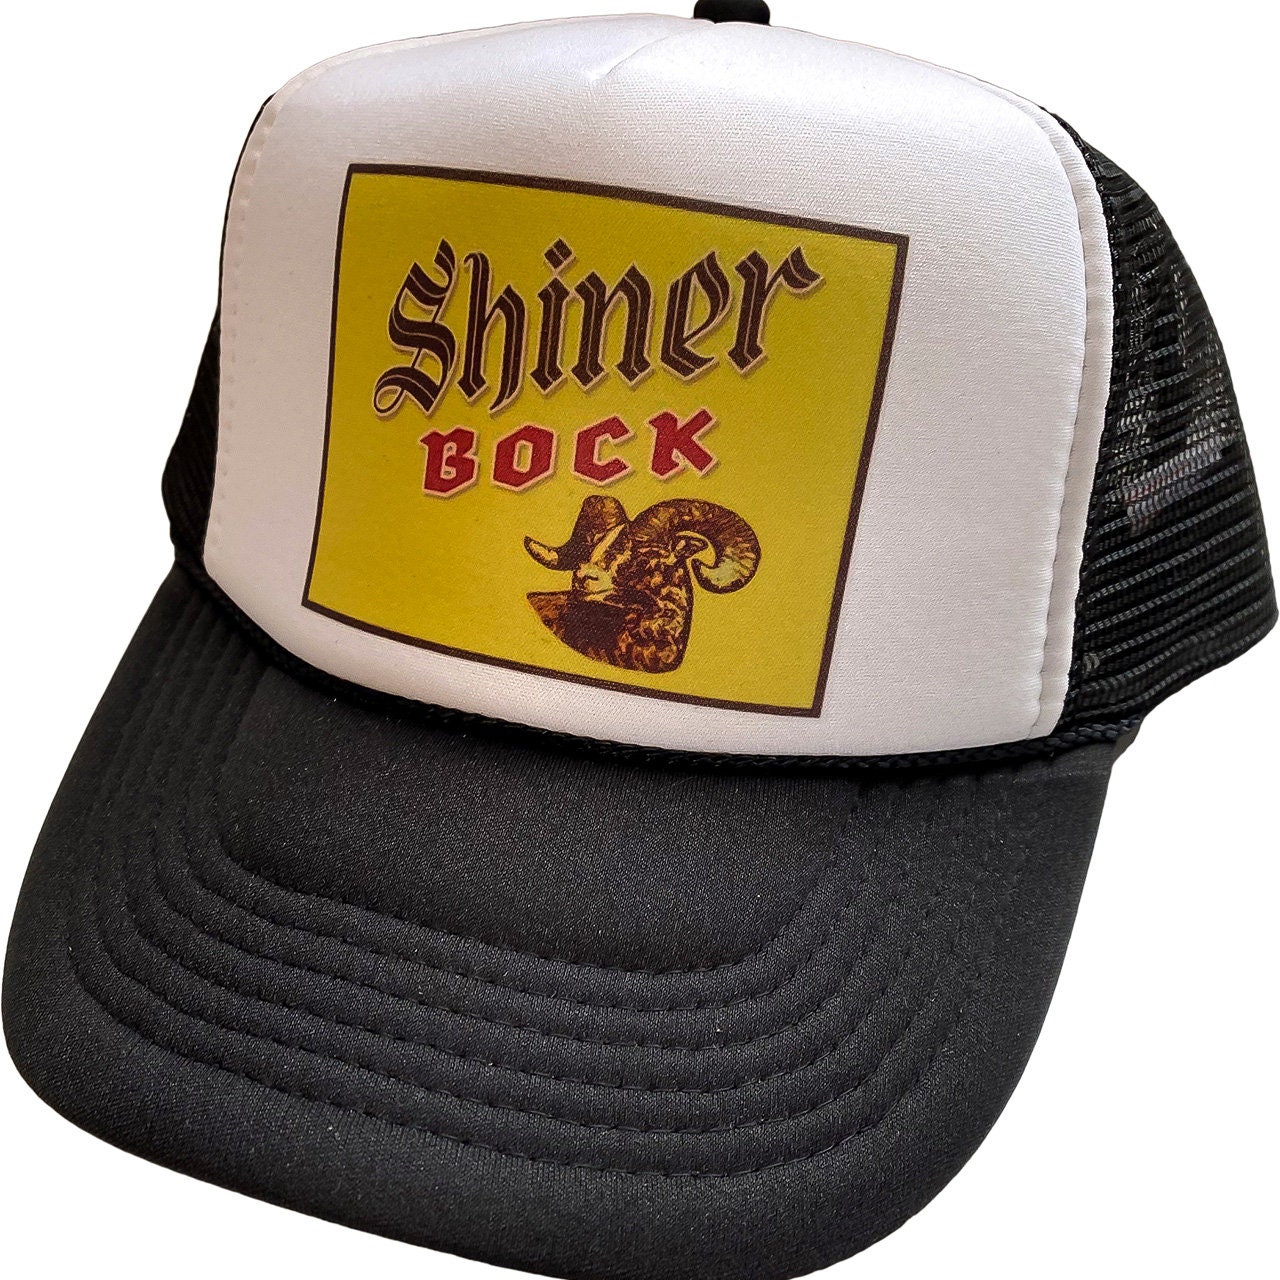 Shiner Bock Caps 